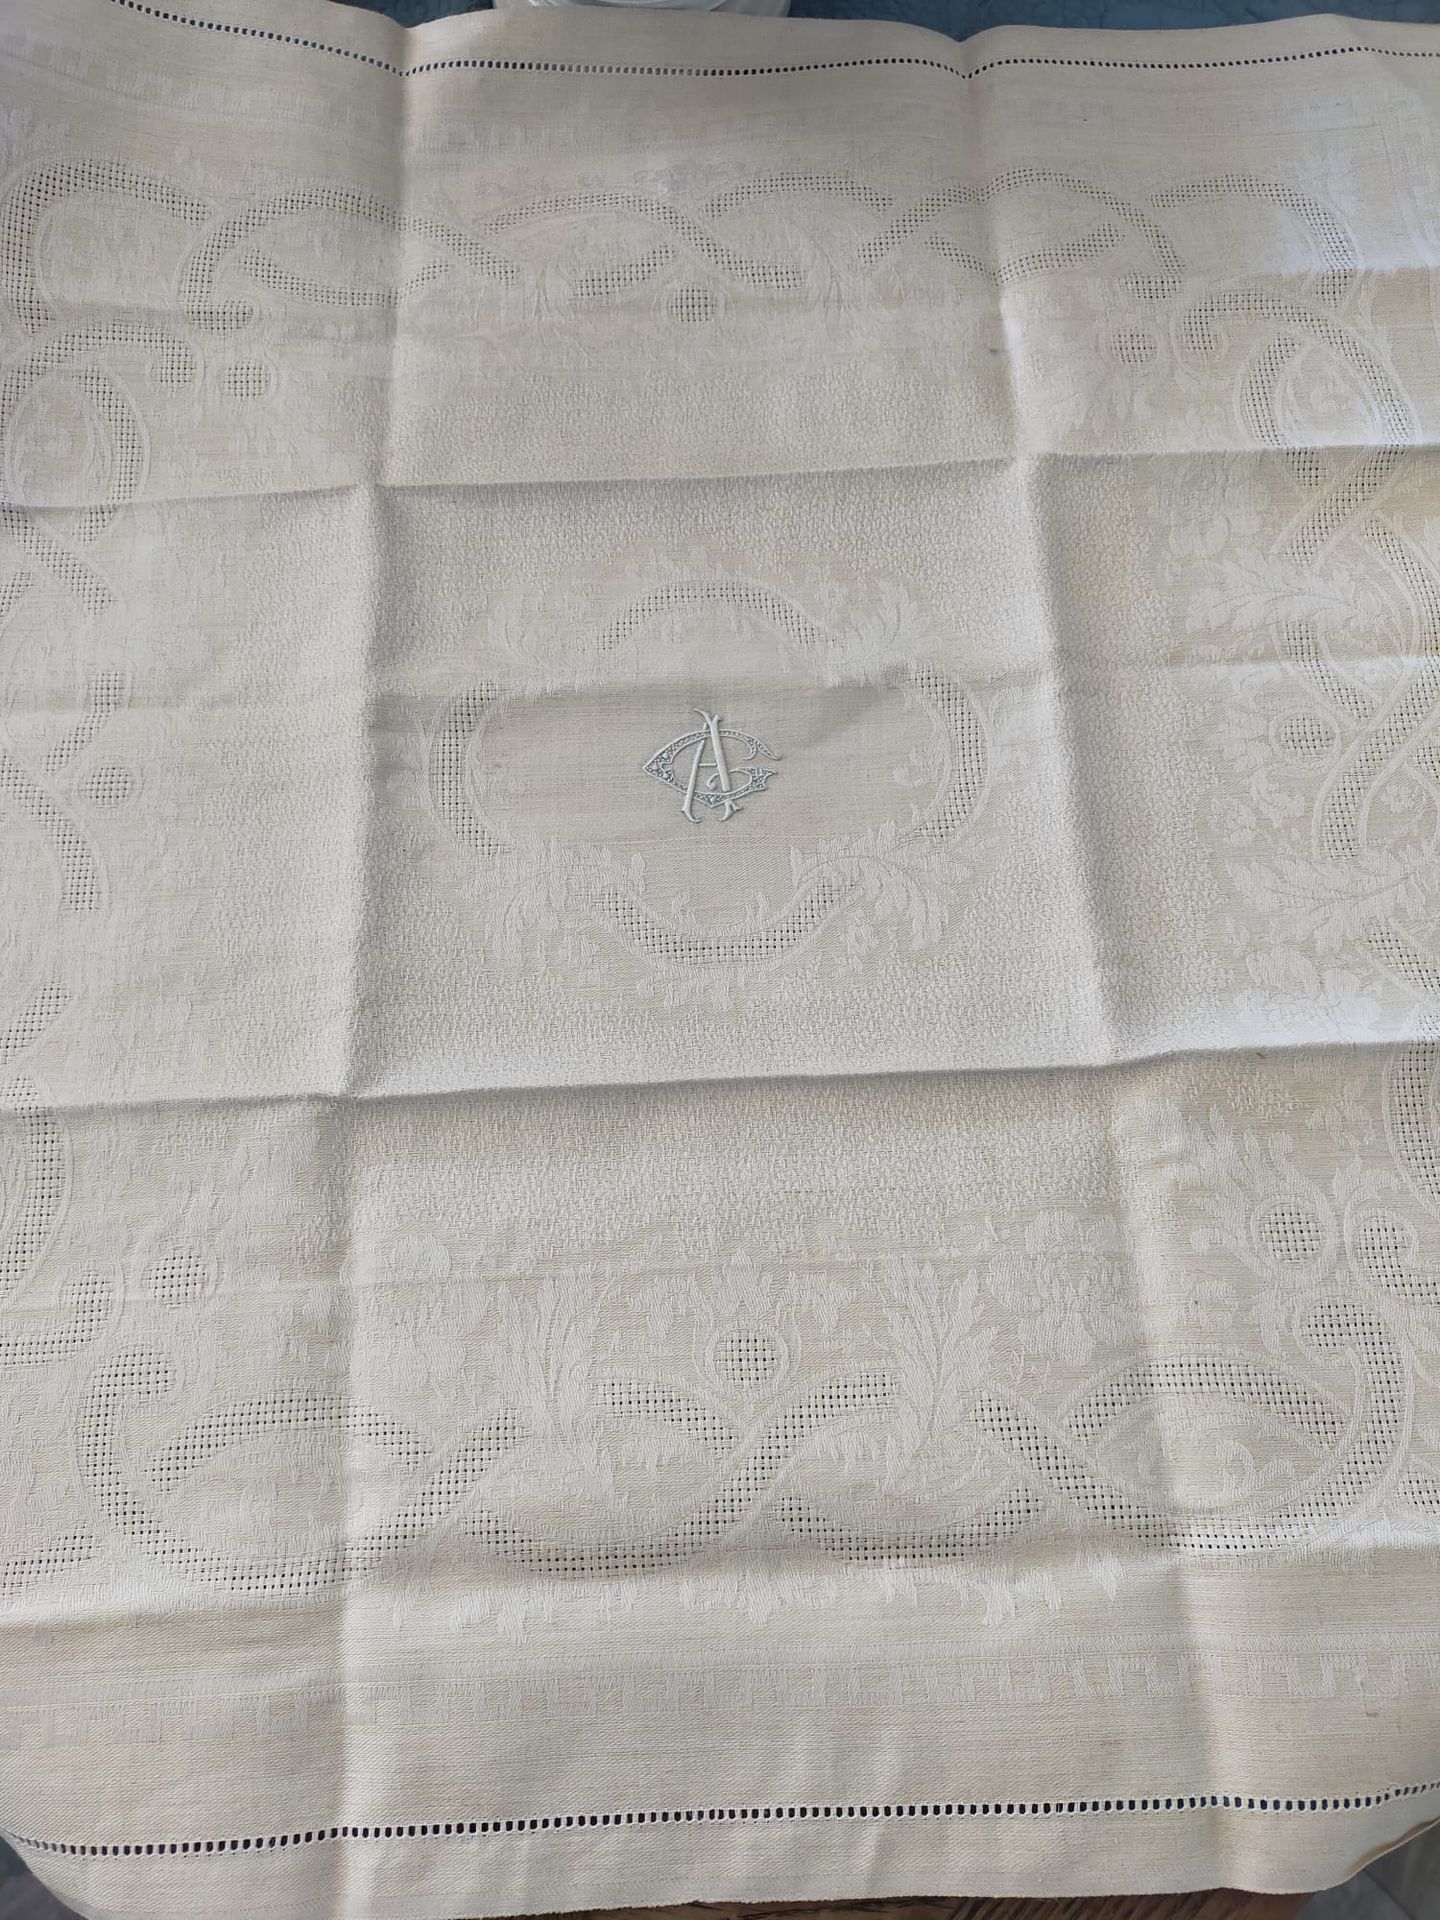 Null 12条毛巾套装，20世纪上半叶。
12条大马士革棉布毛巾，装饰有双绞线和叶子，中间绣有AG。(全新状态)